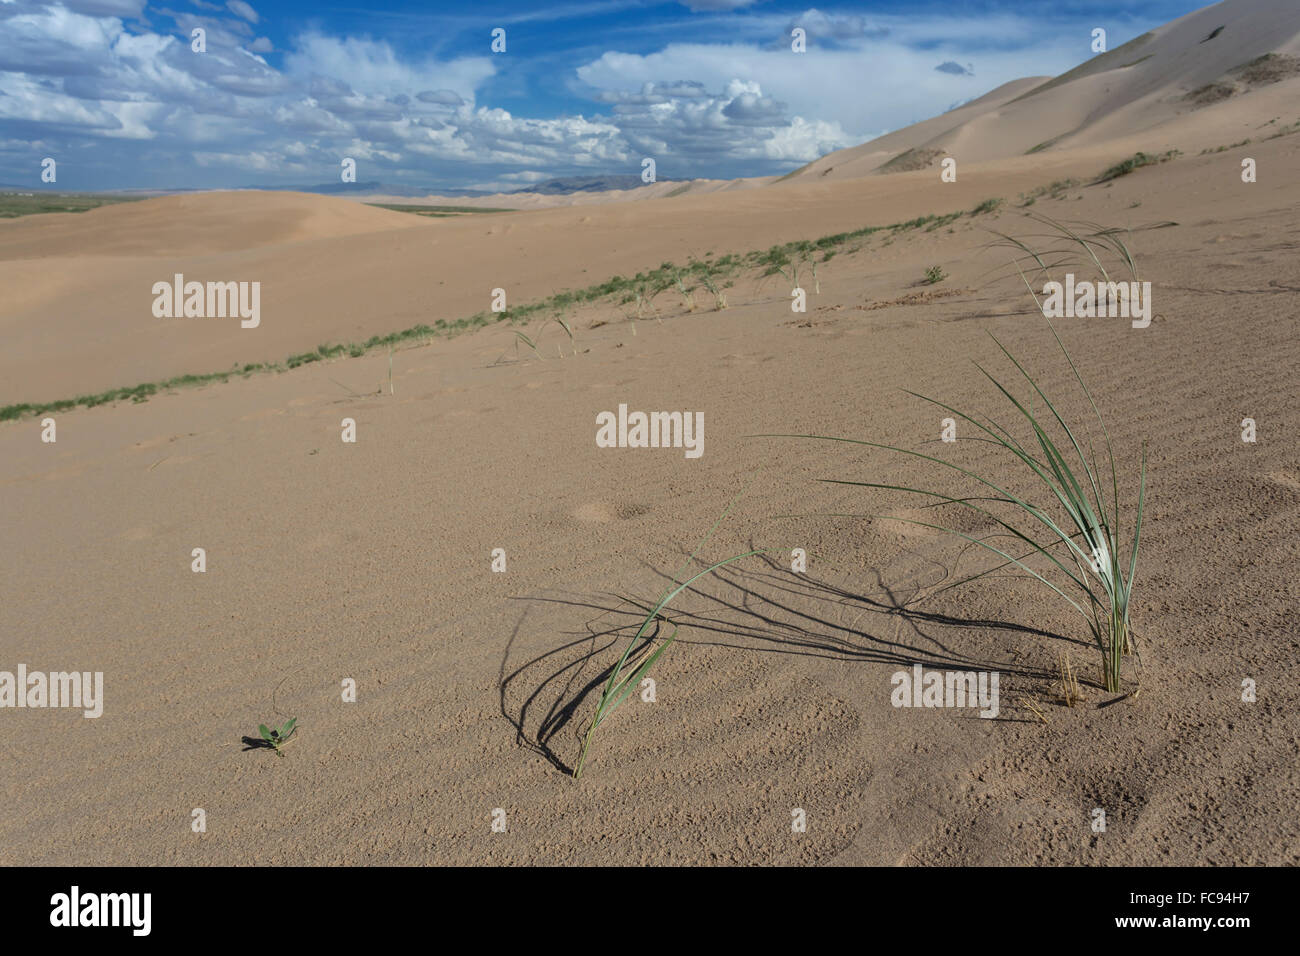 Planta que crecen en enormes dunas de arena en una tarde de verano, Khongoryn Els, el desierto de Gobi, Mongolia, Asia Central, África Foto de stock